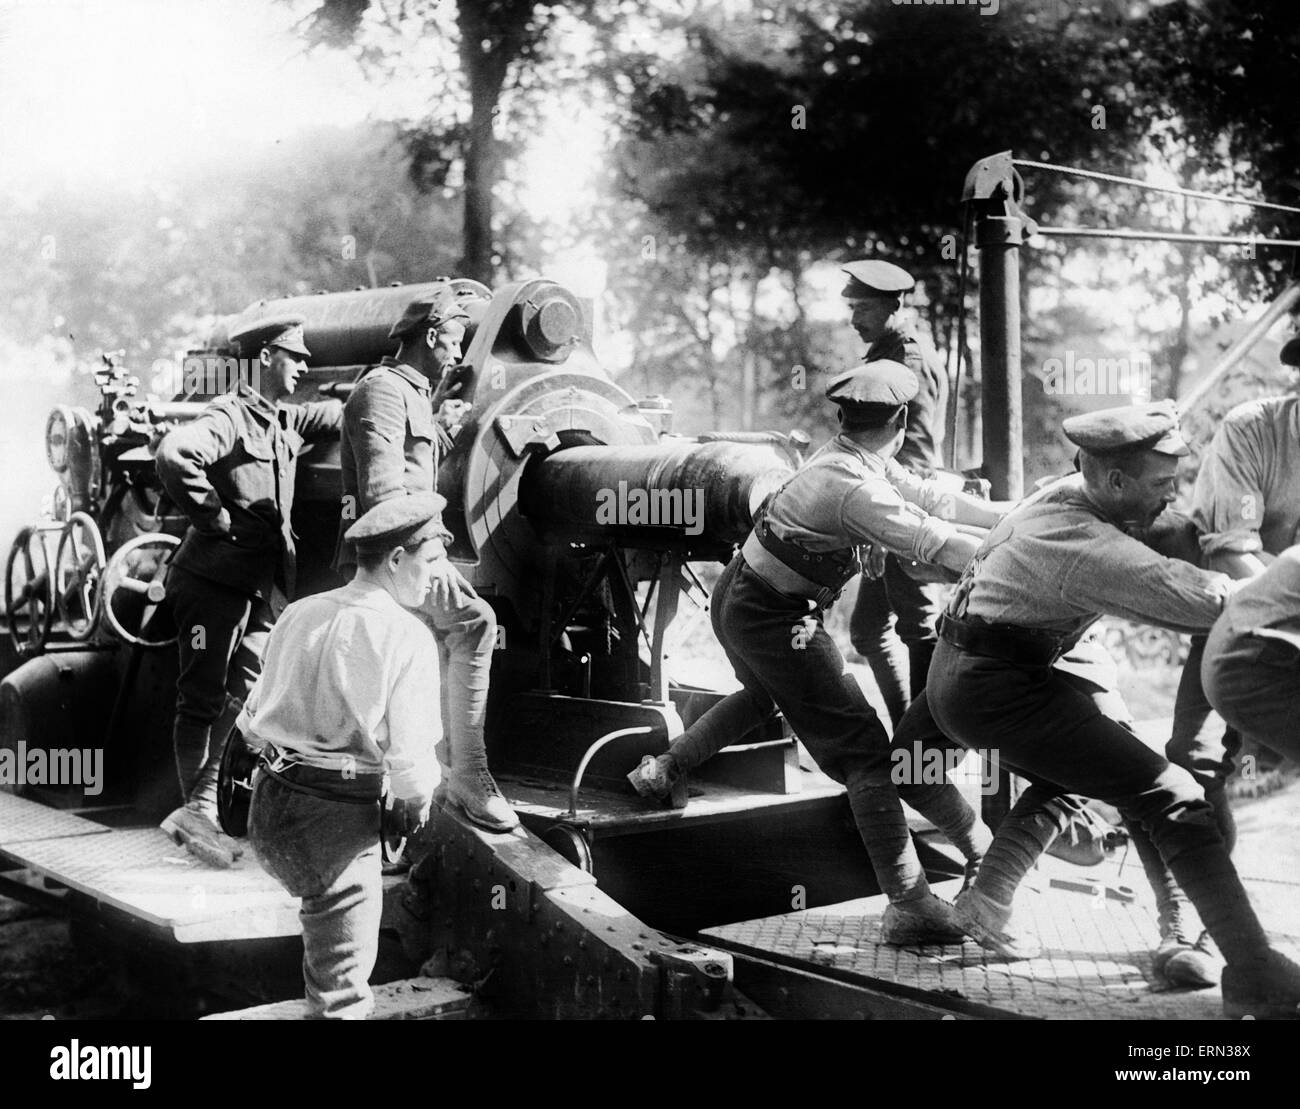 Soldados canadienses cargando un shell en un obús de 15 pulgadas durante un intenso bombardeo de artillería antes del comienzo de la batalla de Flers-Courcelette fase de la batalla del Somme en el verano de 1916. El 15 de septiembre, 1916 Foto de stock